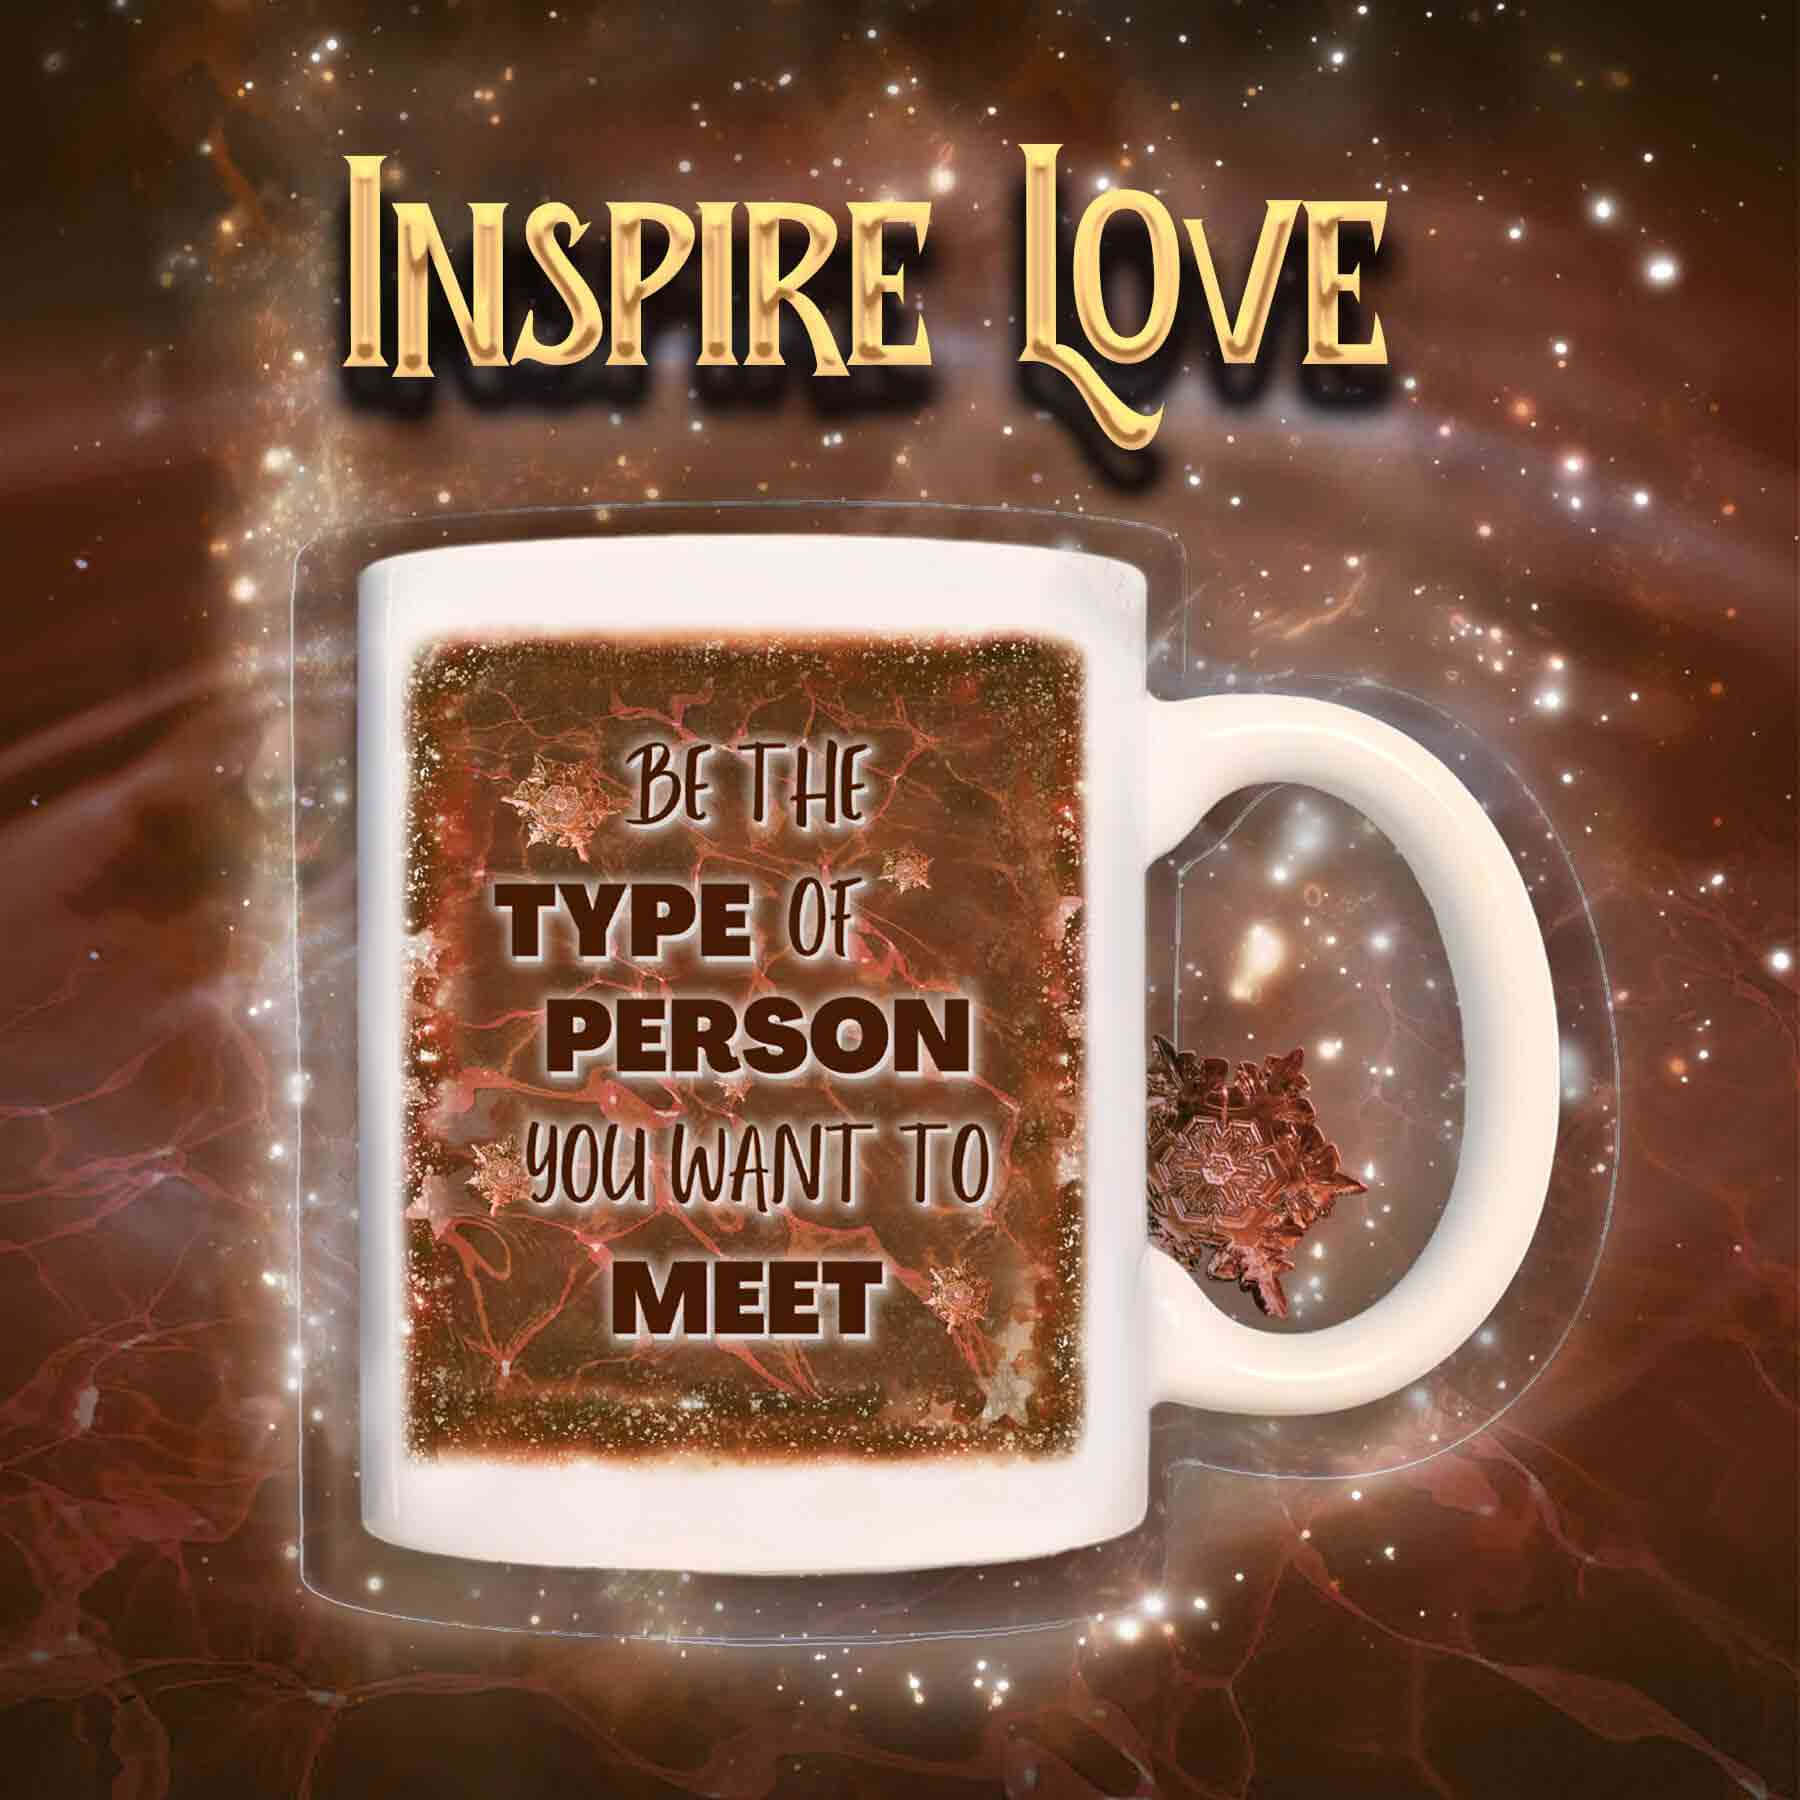 Be-the-type motivational mug
